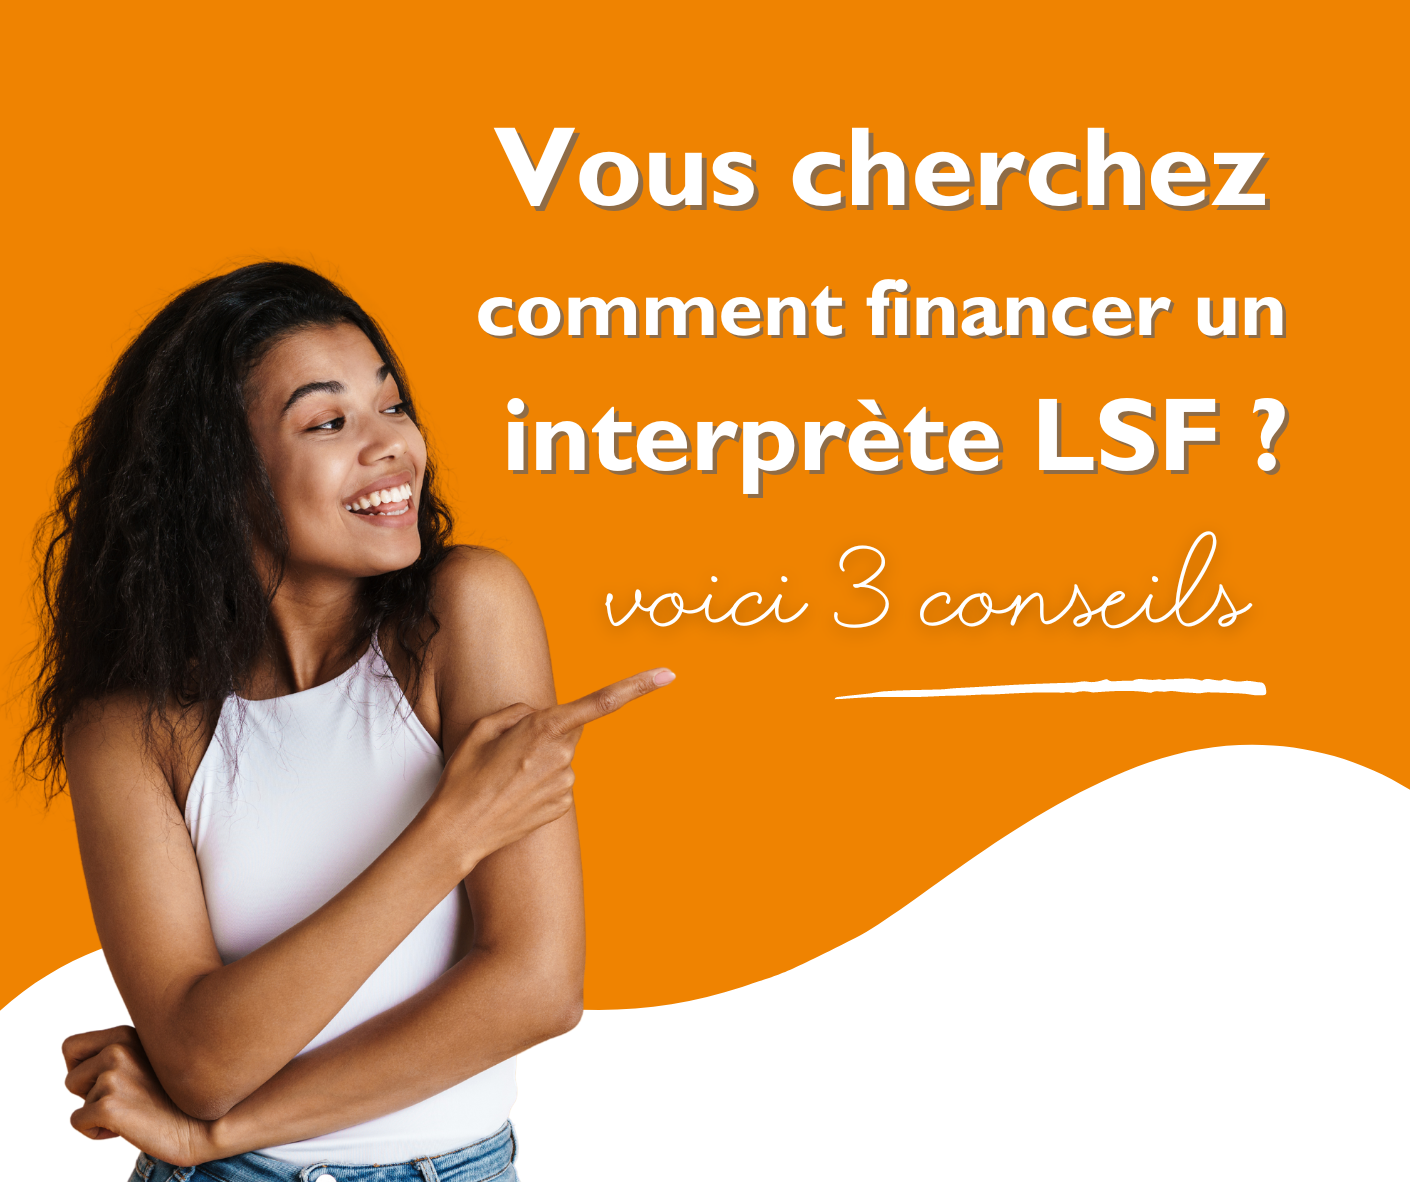 3 conseils pour financer un interprète LSF